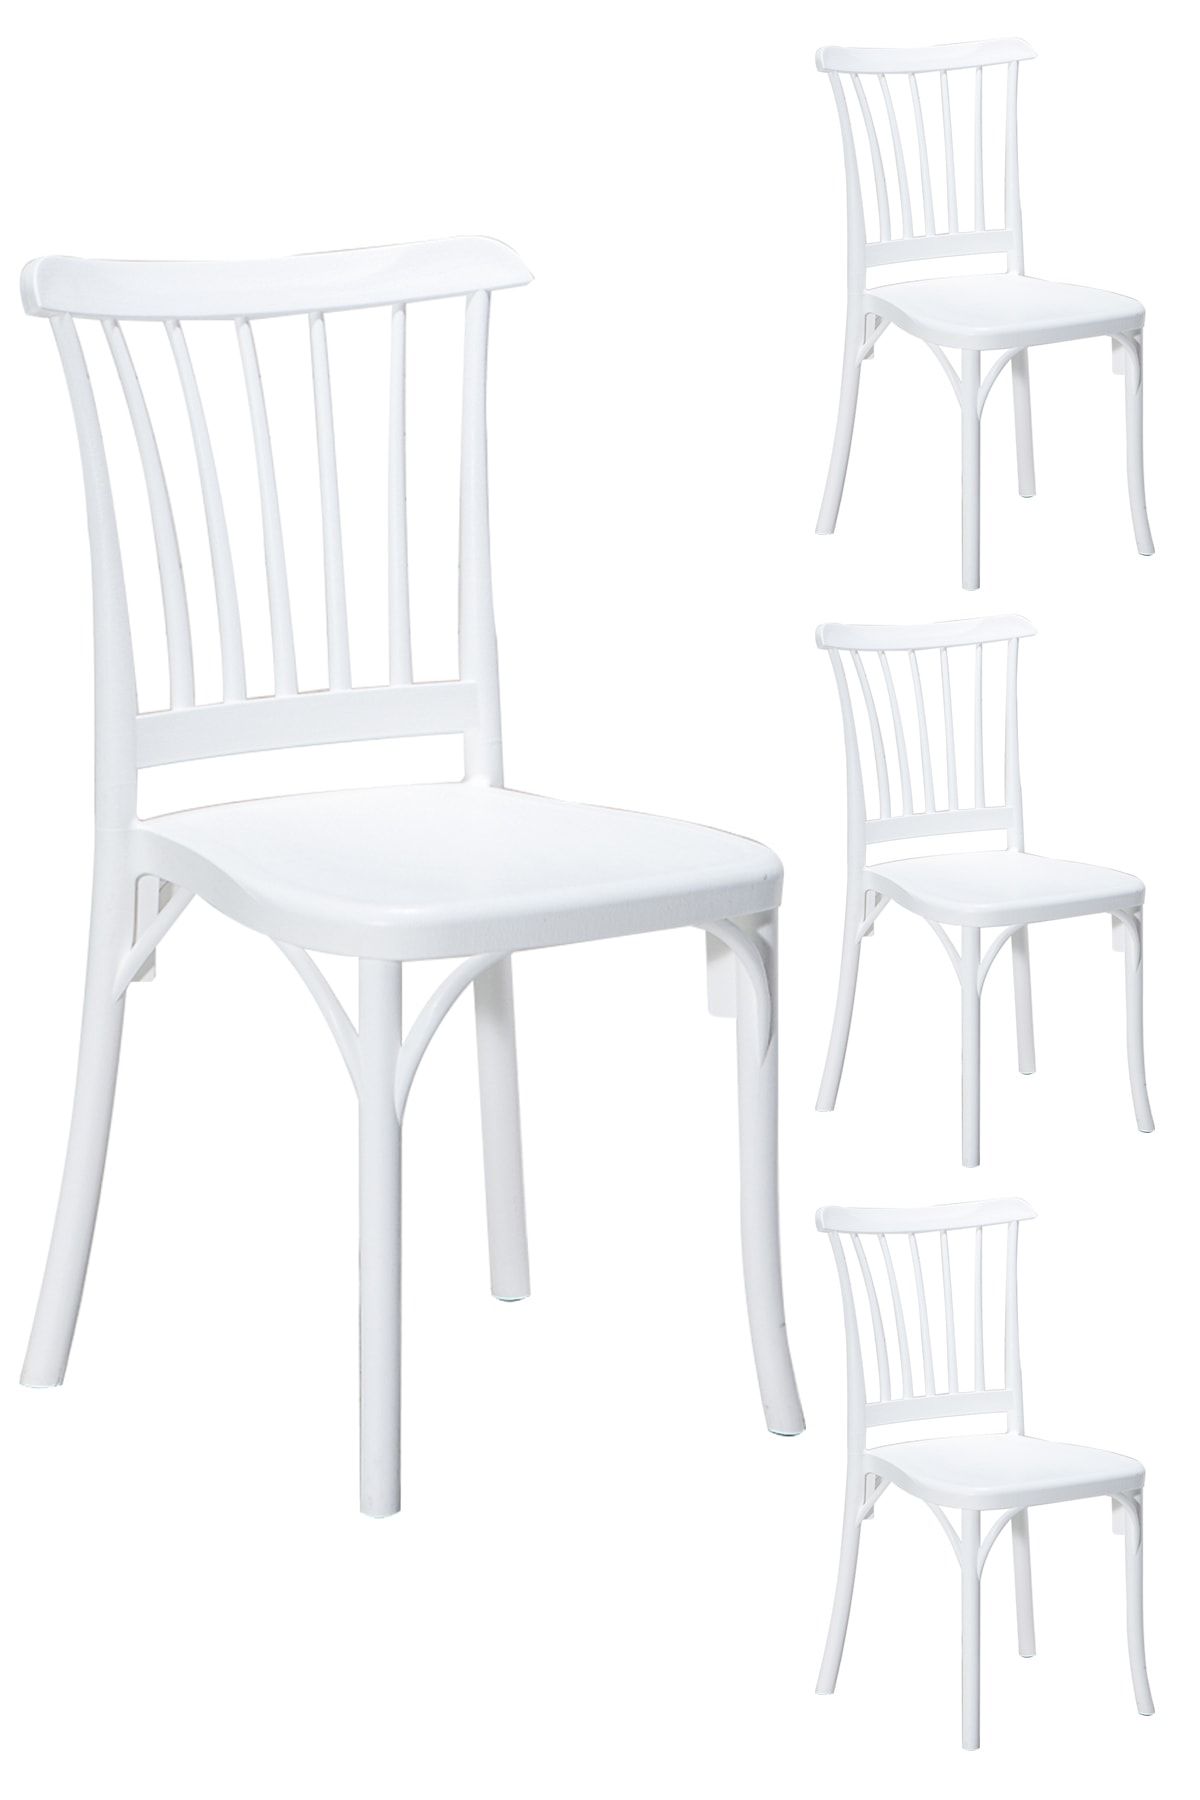 SANDALİE 4 Adet Violet Beyaz Sandalye / Balkon-bahçe-mutfak